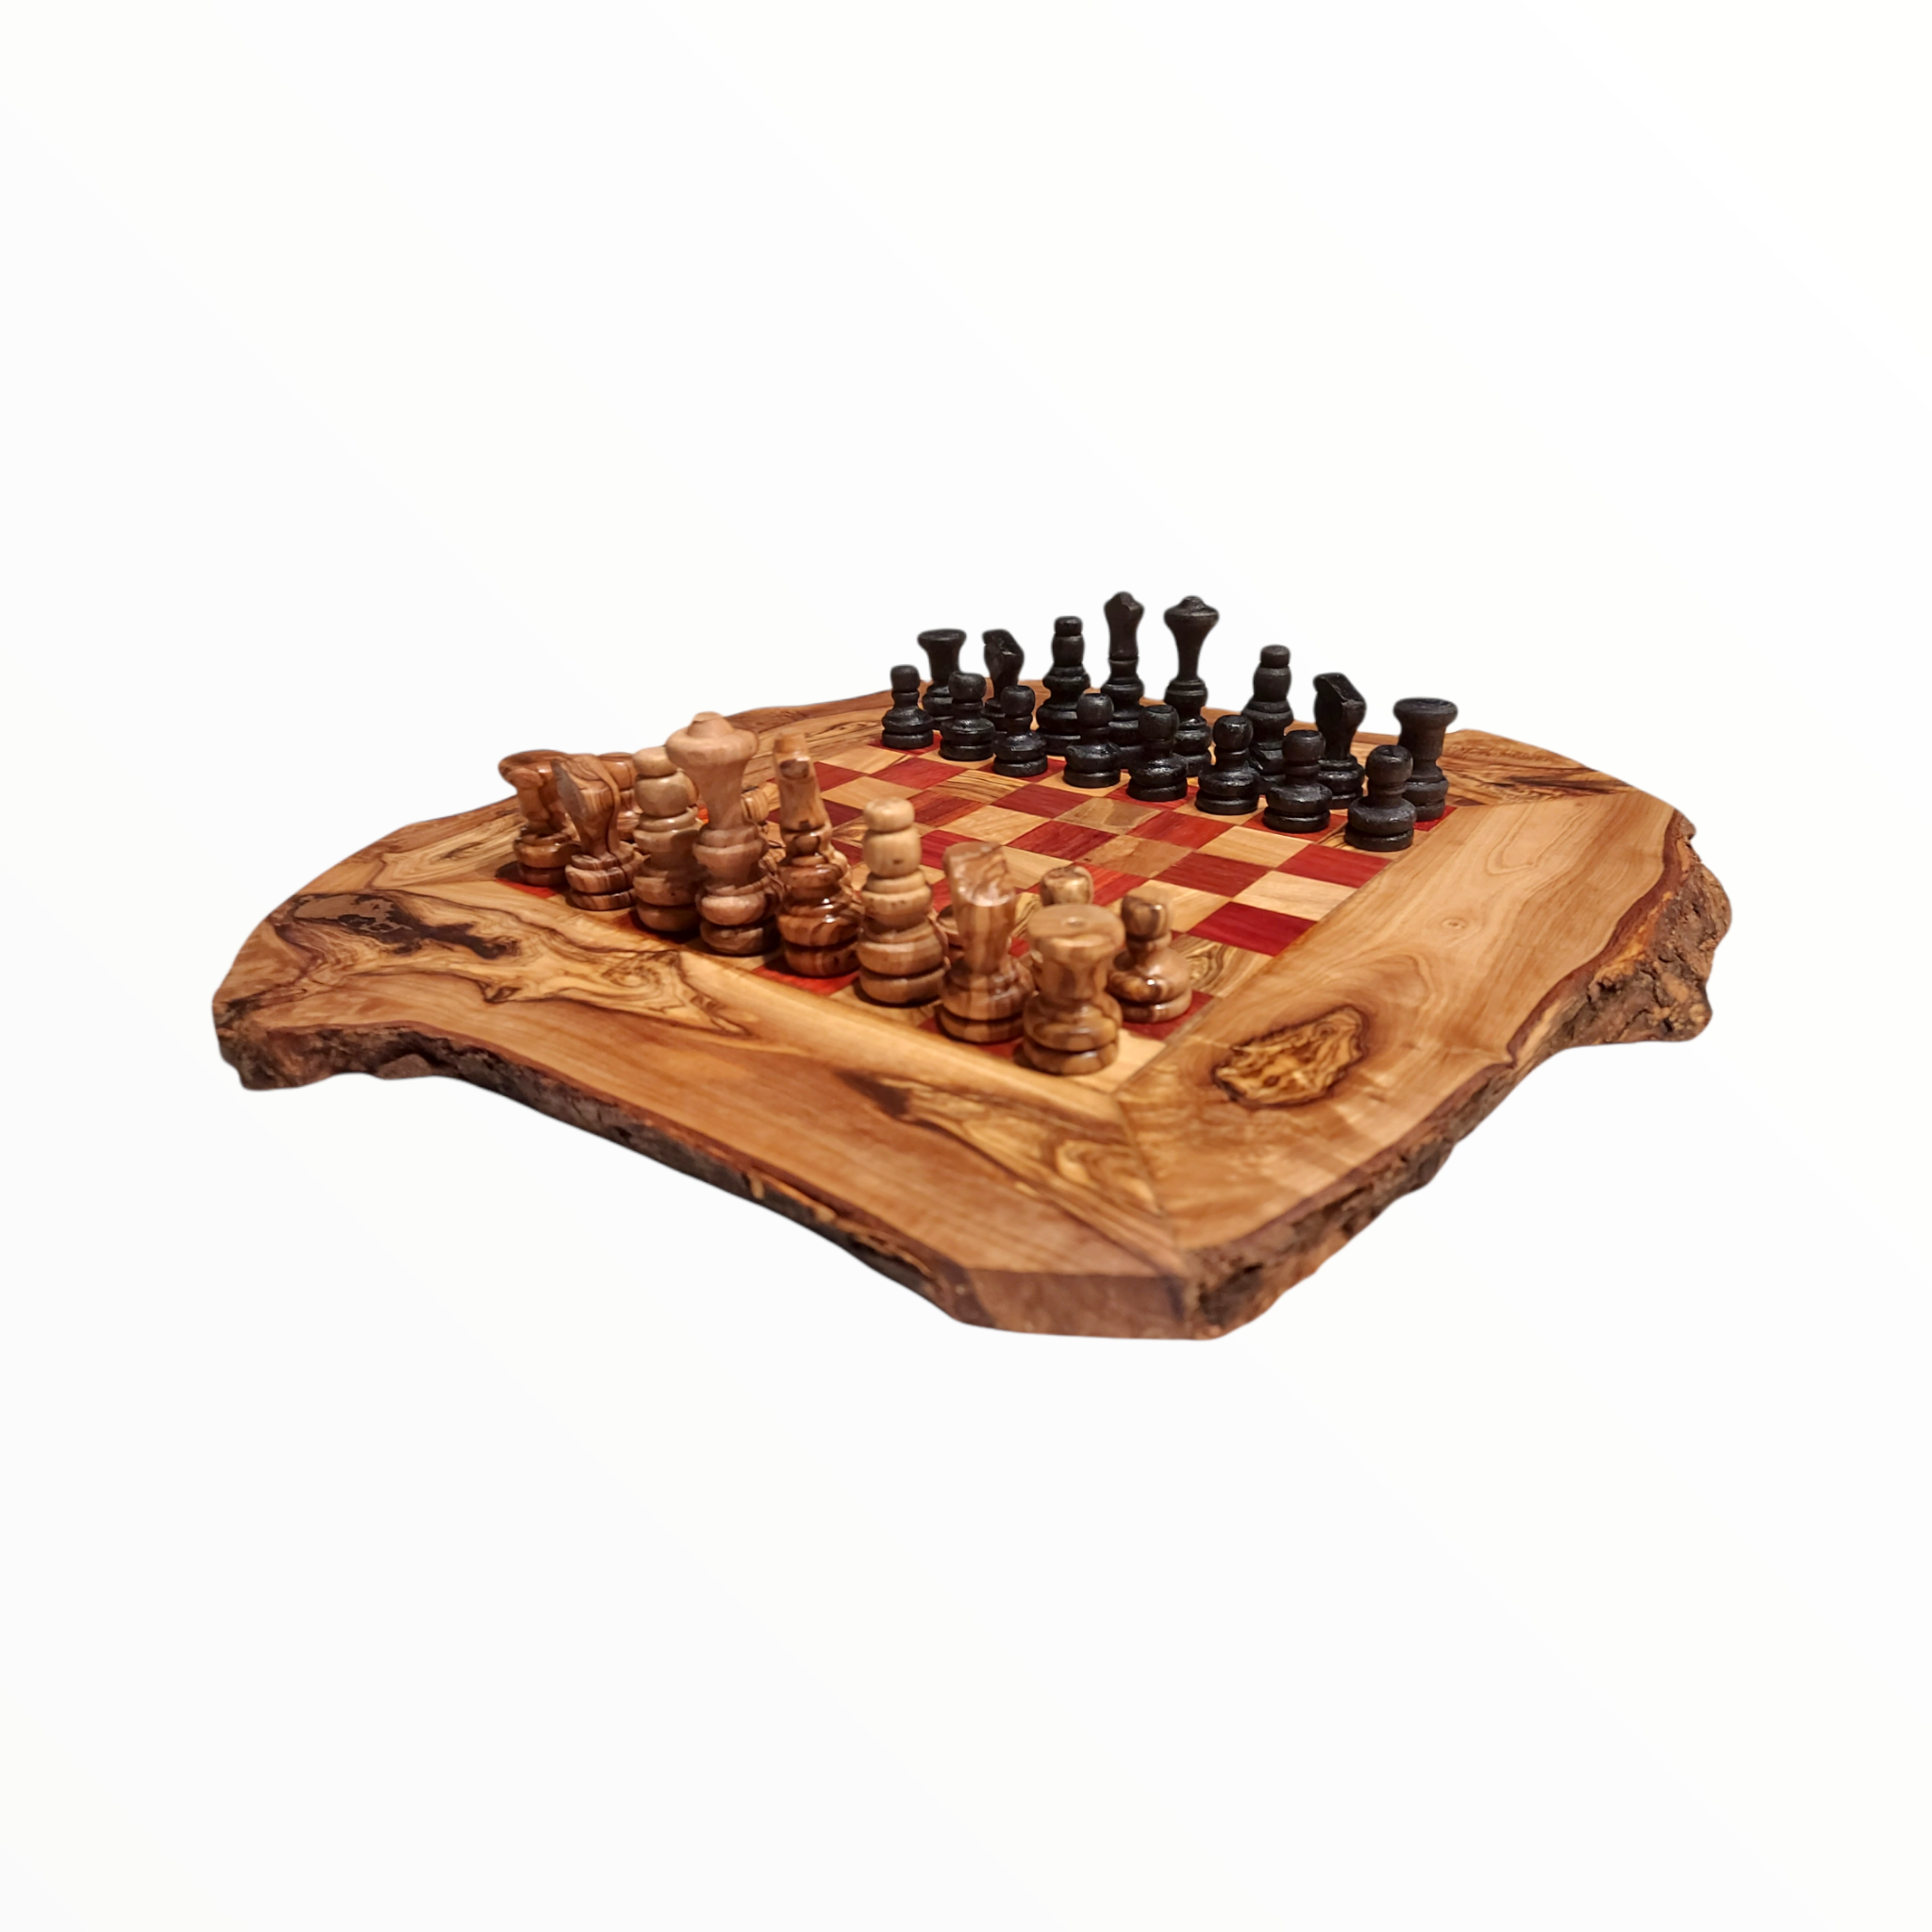 Handgemaakte Olijfhouten Rustic Schaakbord Schaak stukken - Rood 30 cm Gratis Beeswax ) - Handwerkmarkt